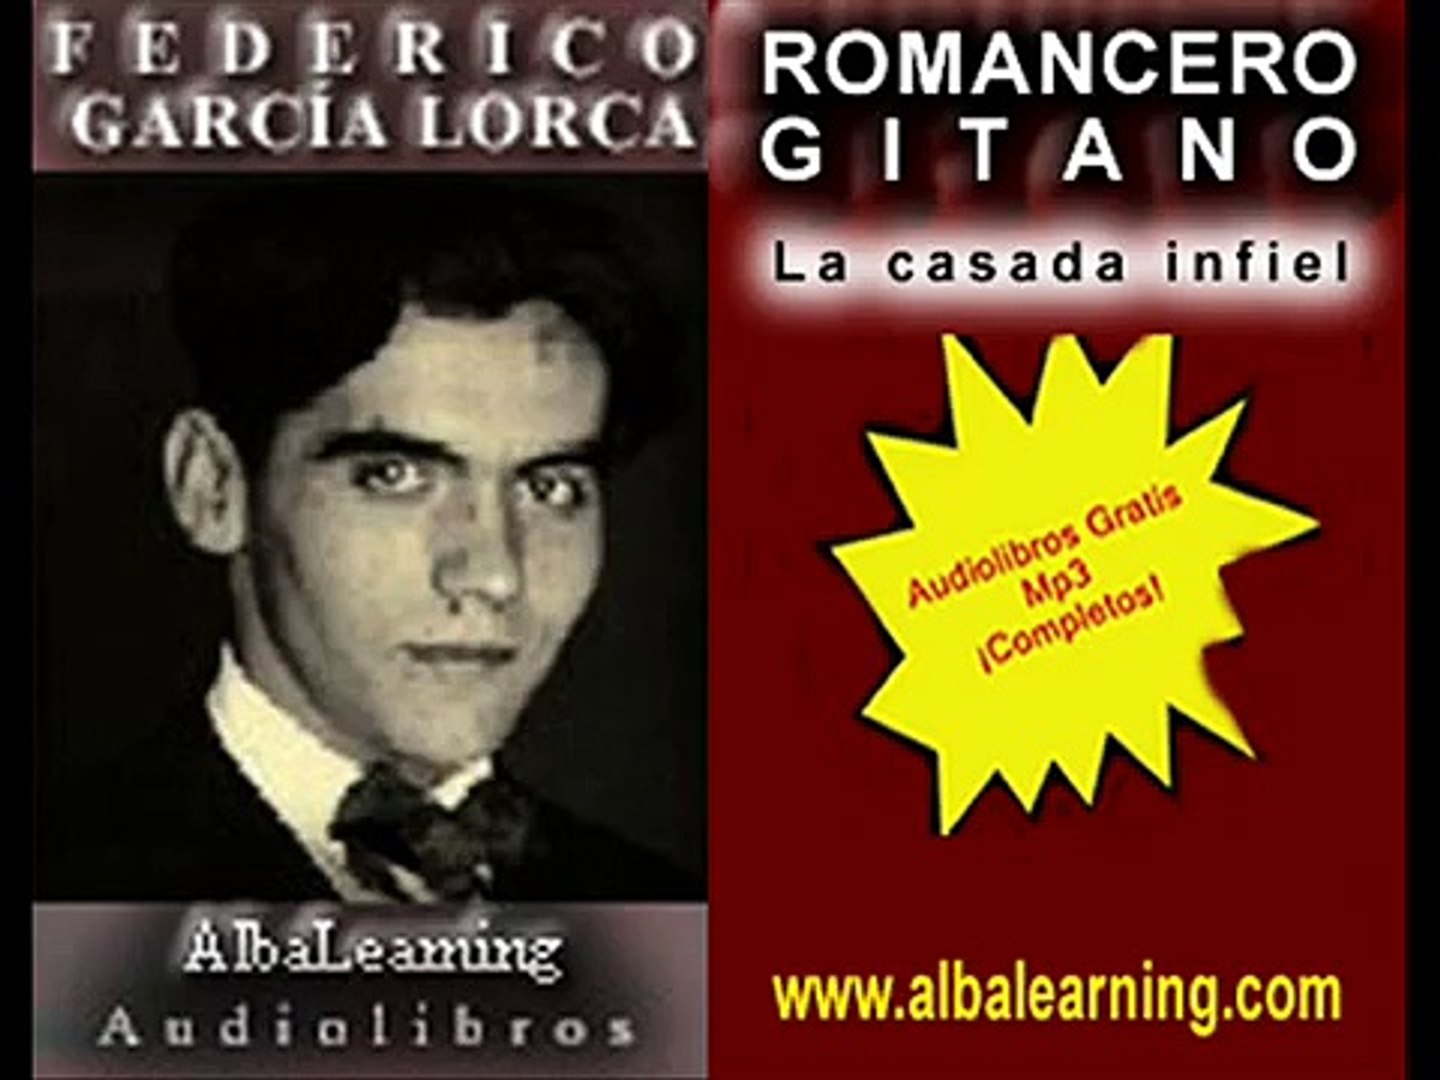 Audiolibros gratis mp3 - La casada infiel - Lorca - Poemas - Videolibros  AlbaLearning - video Dailymotion